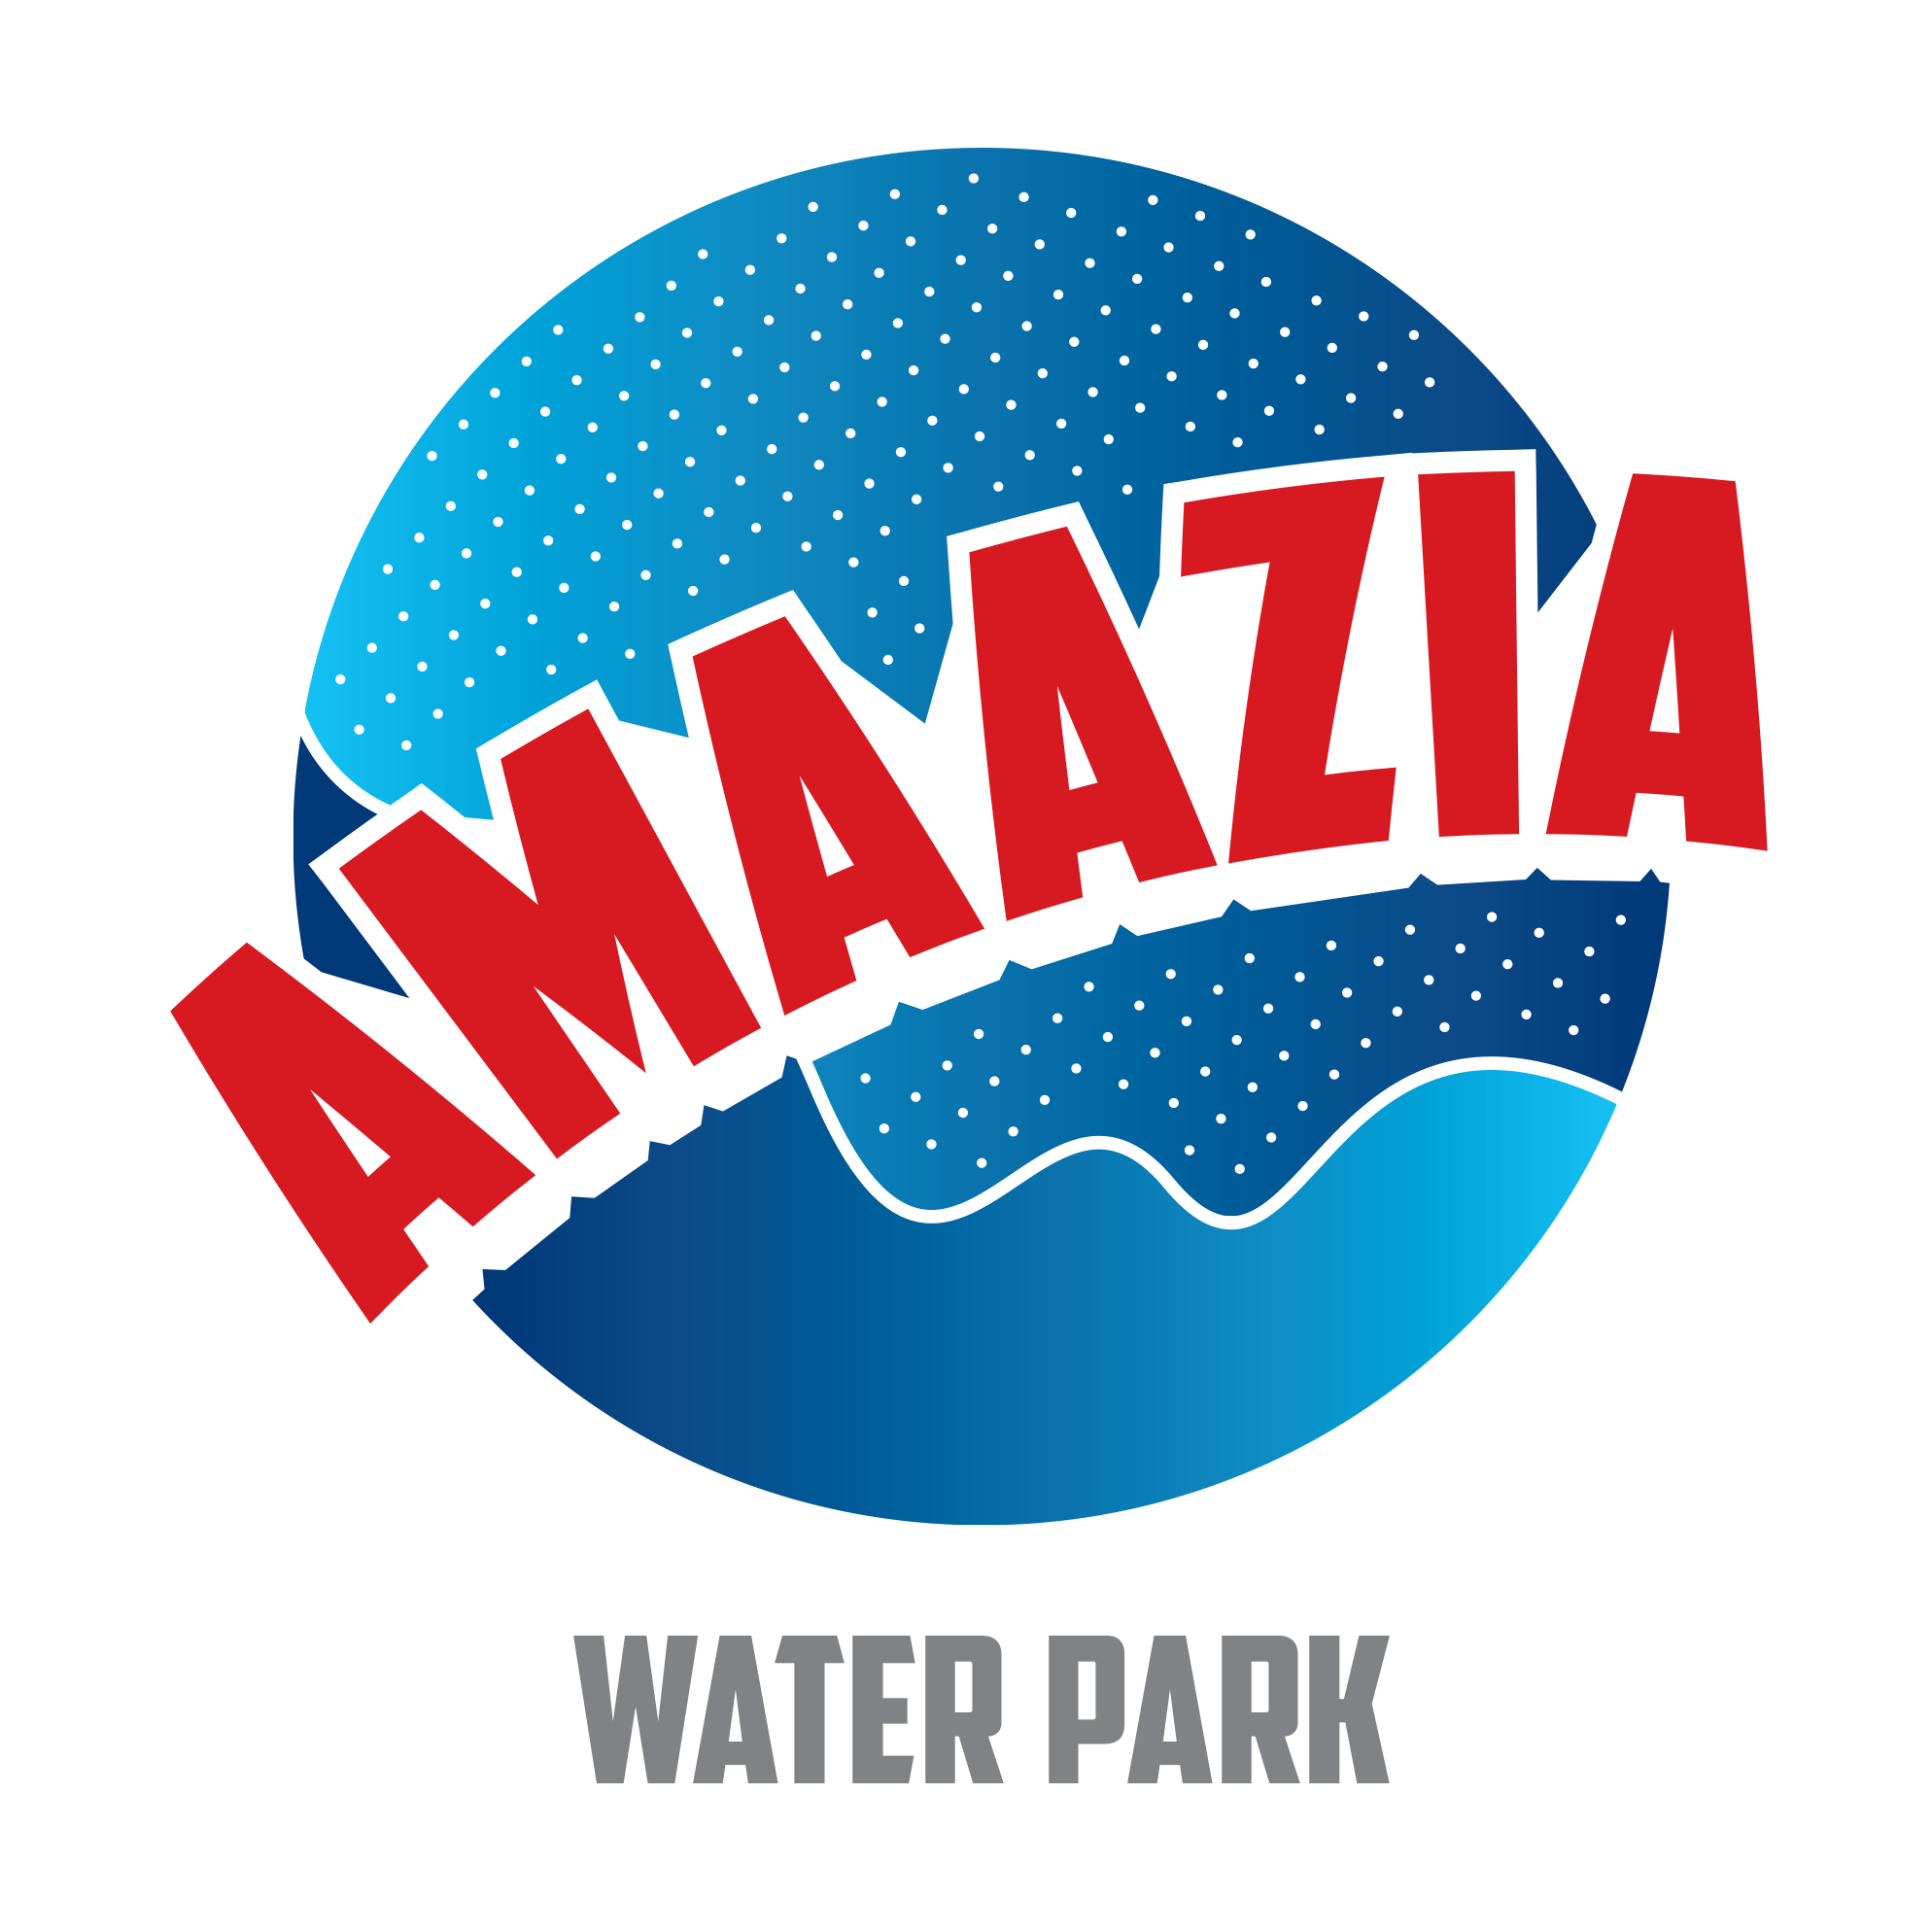 Amaazia Water Park|Amusement Park|Entertainment